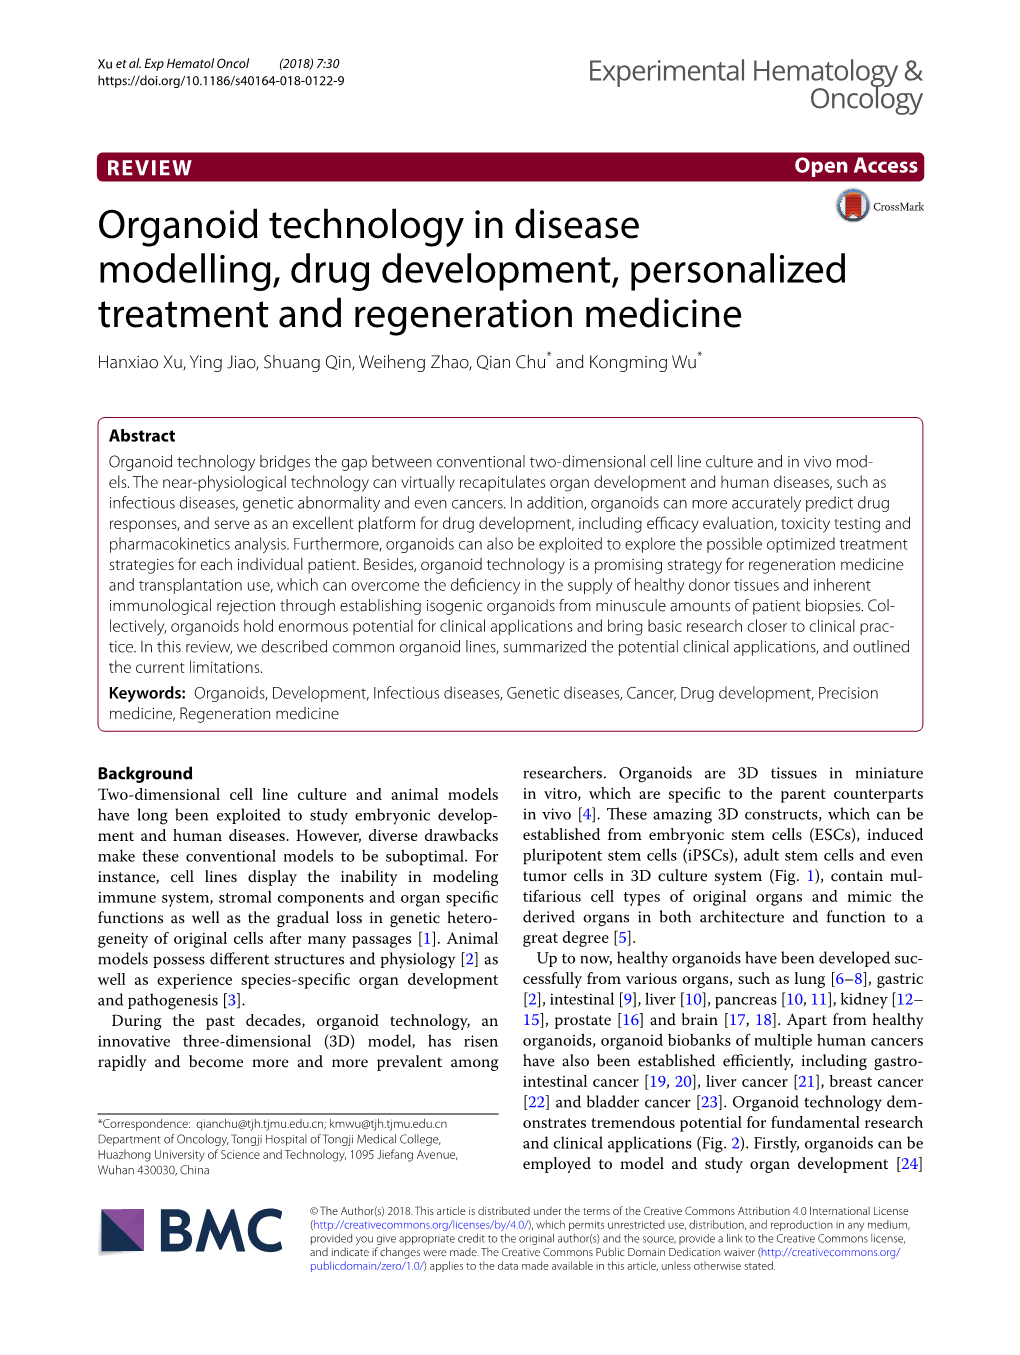 Organoid Technology in Disease Modelling, Drug Development